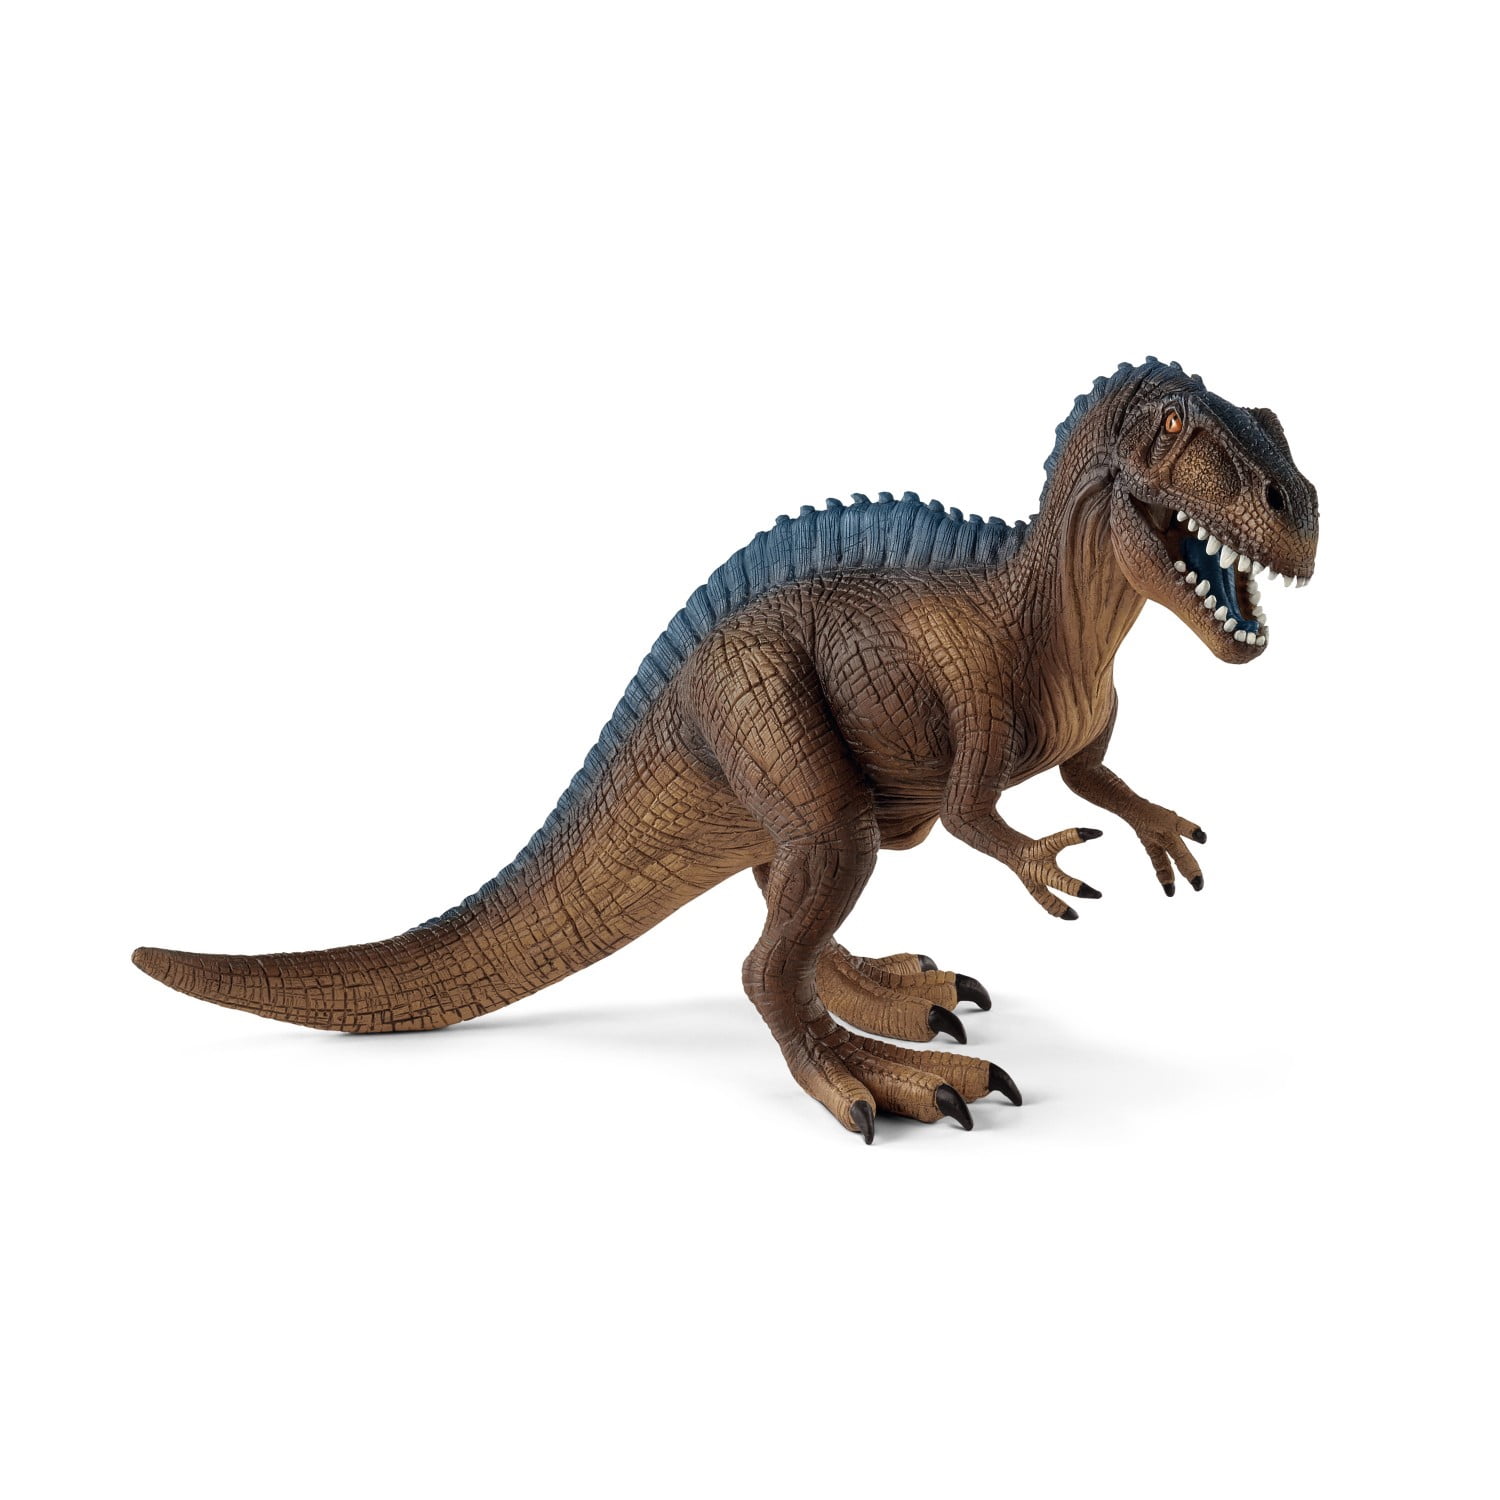 Schleich Spielfigur TherizinosaurusDinosaurier FigurDinofigur zum Spielen 